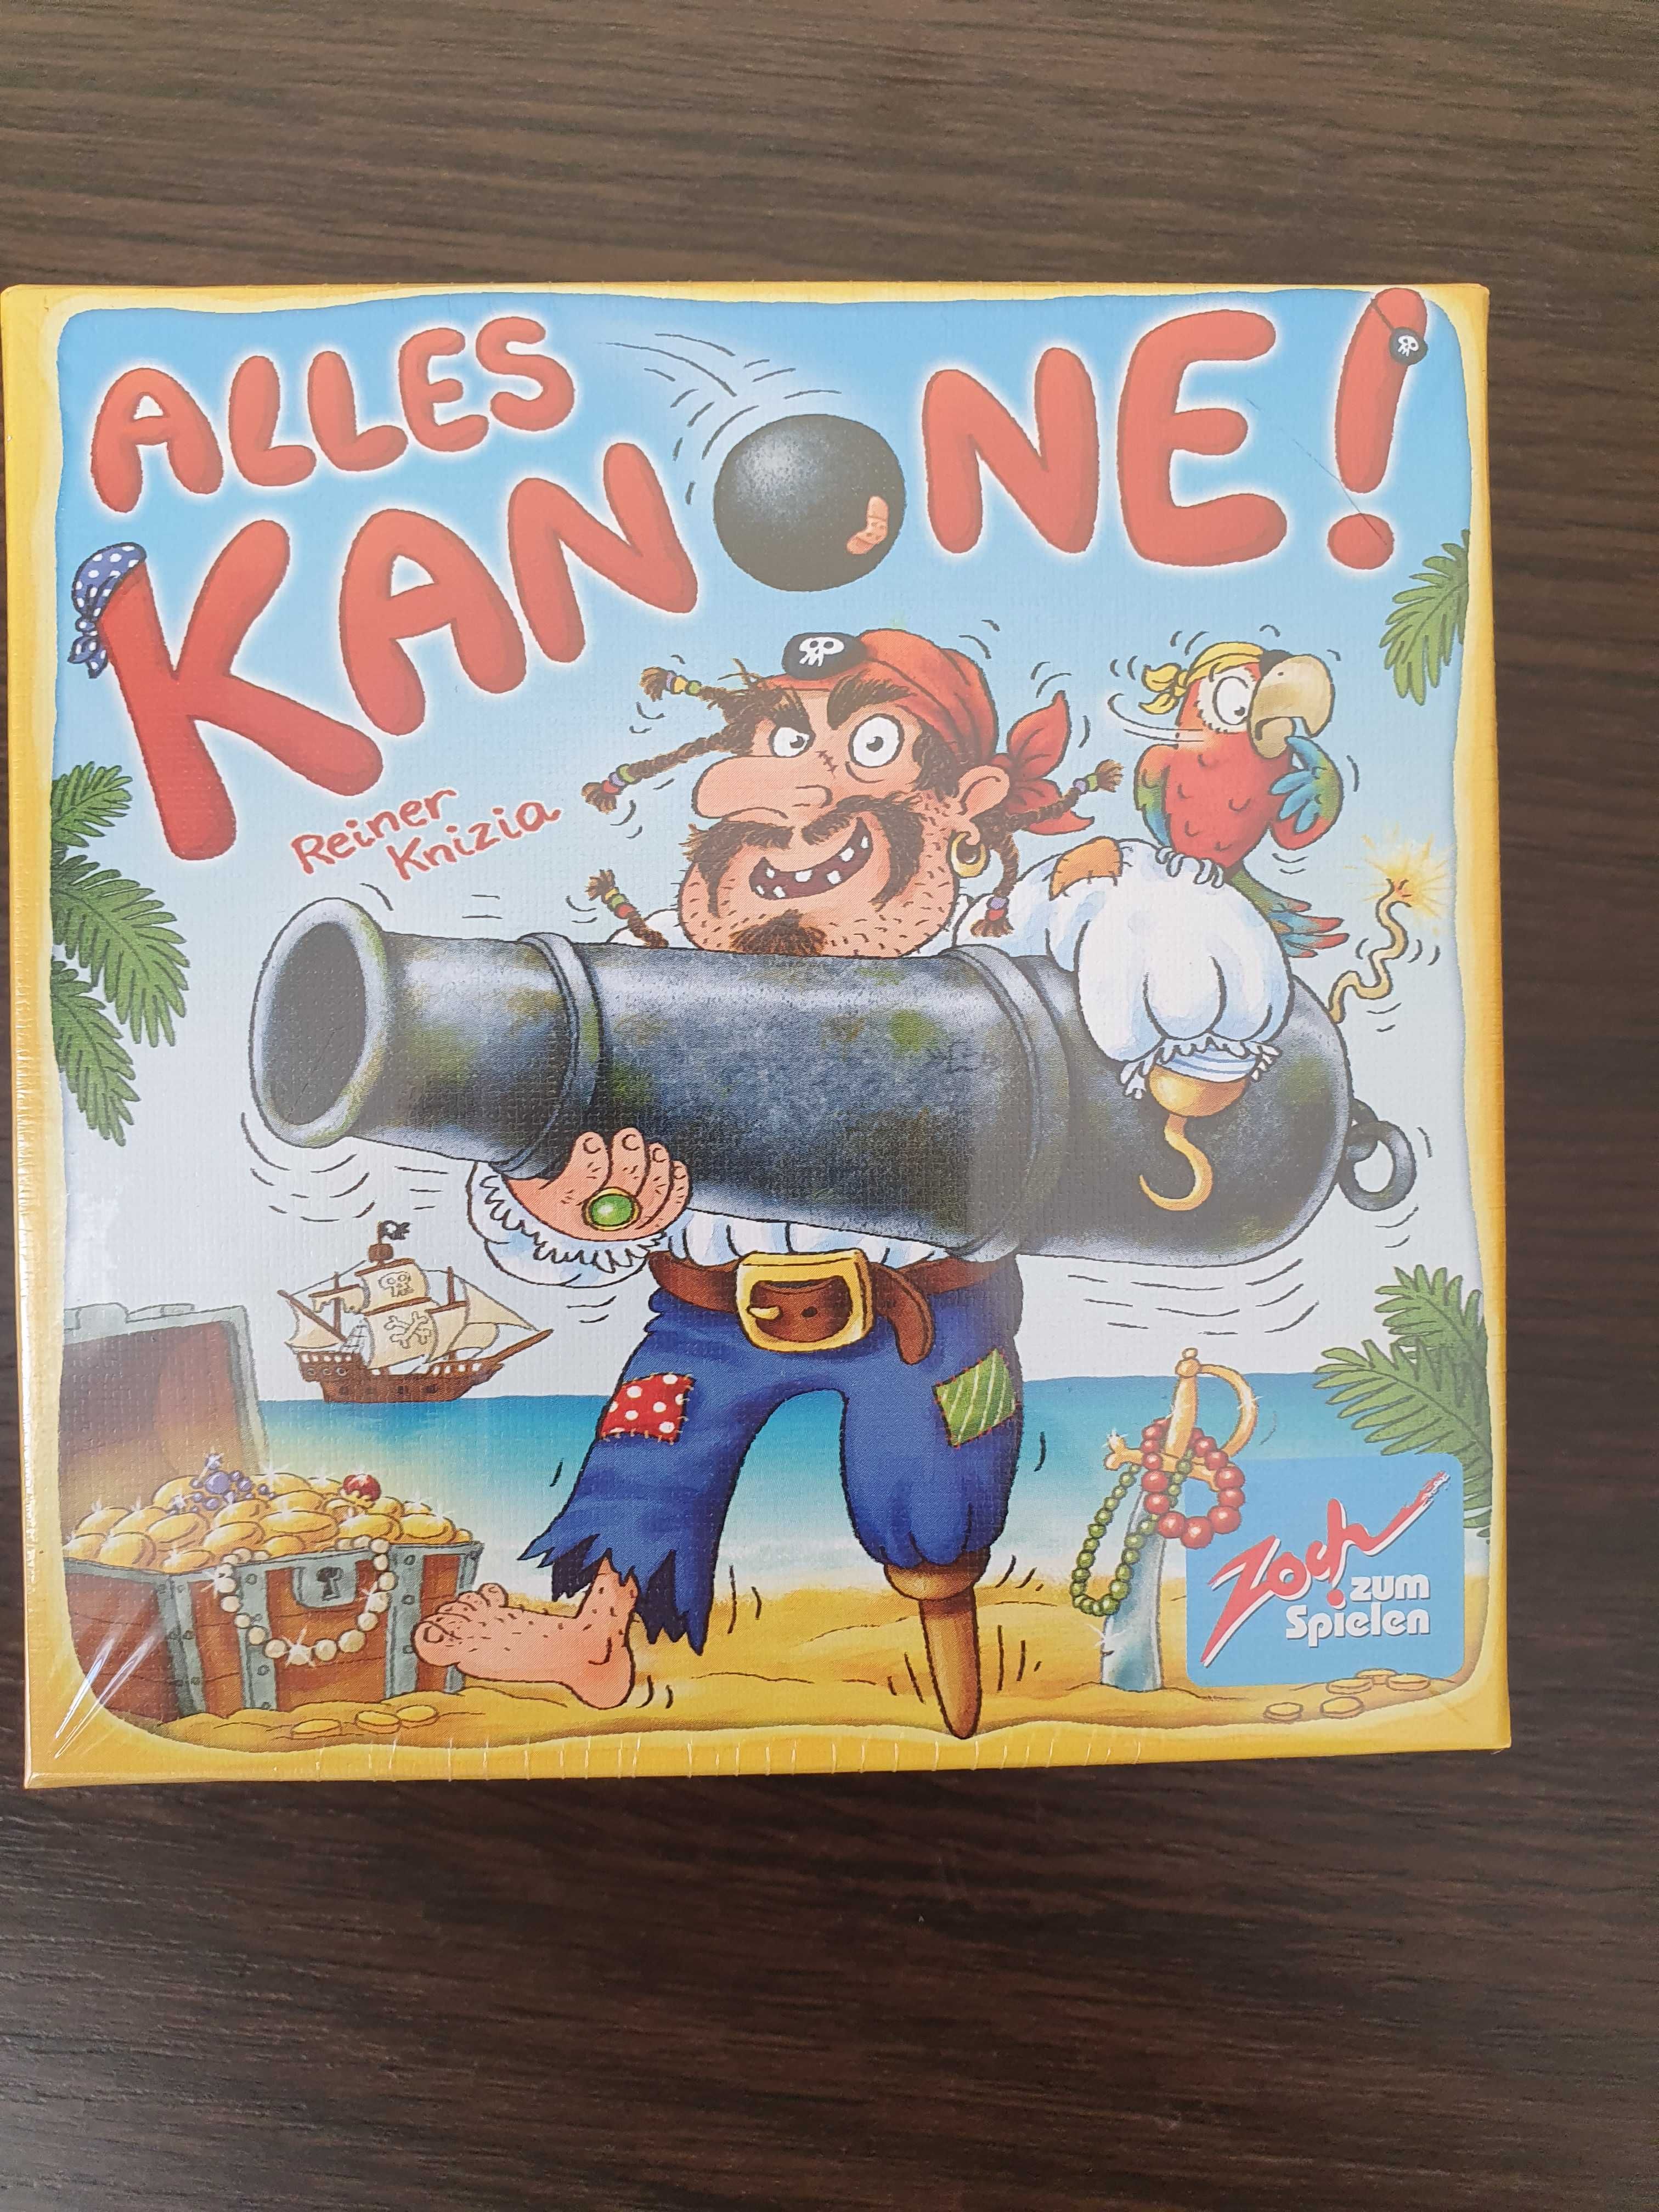 Аллес Пірати (Alles Kanone) - Настільна гра. Стиль життя